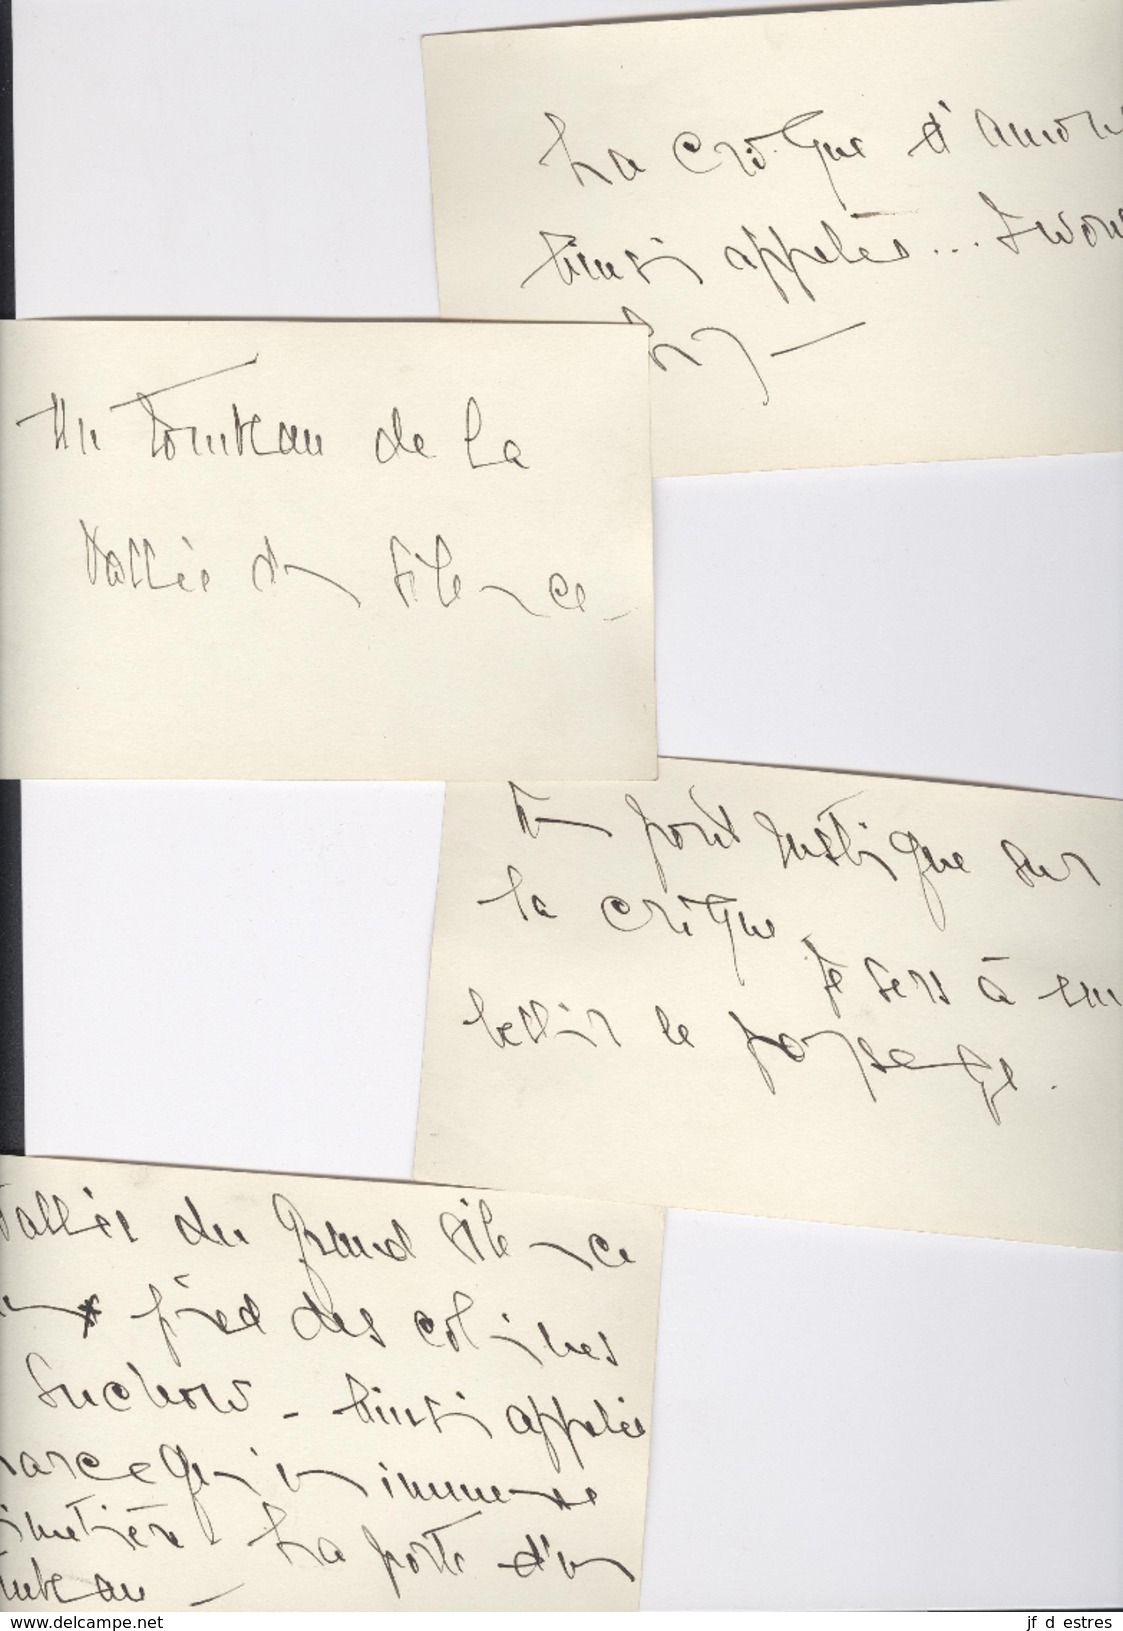 25 Lettres / Cartes postales/enveloppes vides + 7 photos Suchow de Madge van der Stegen à Pierre Weissenbruch 1923-1926?